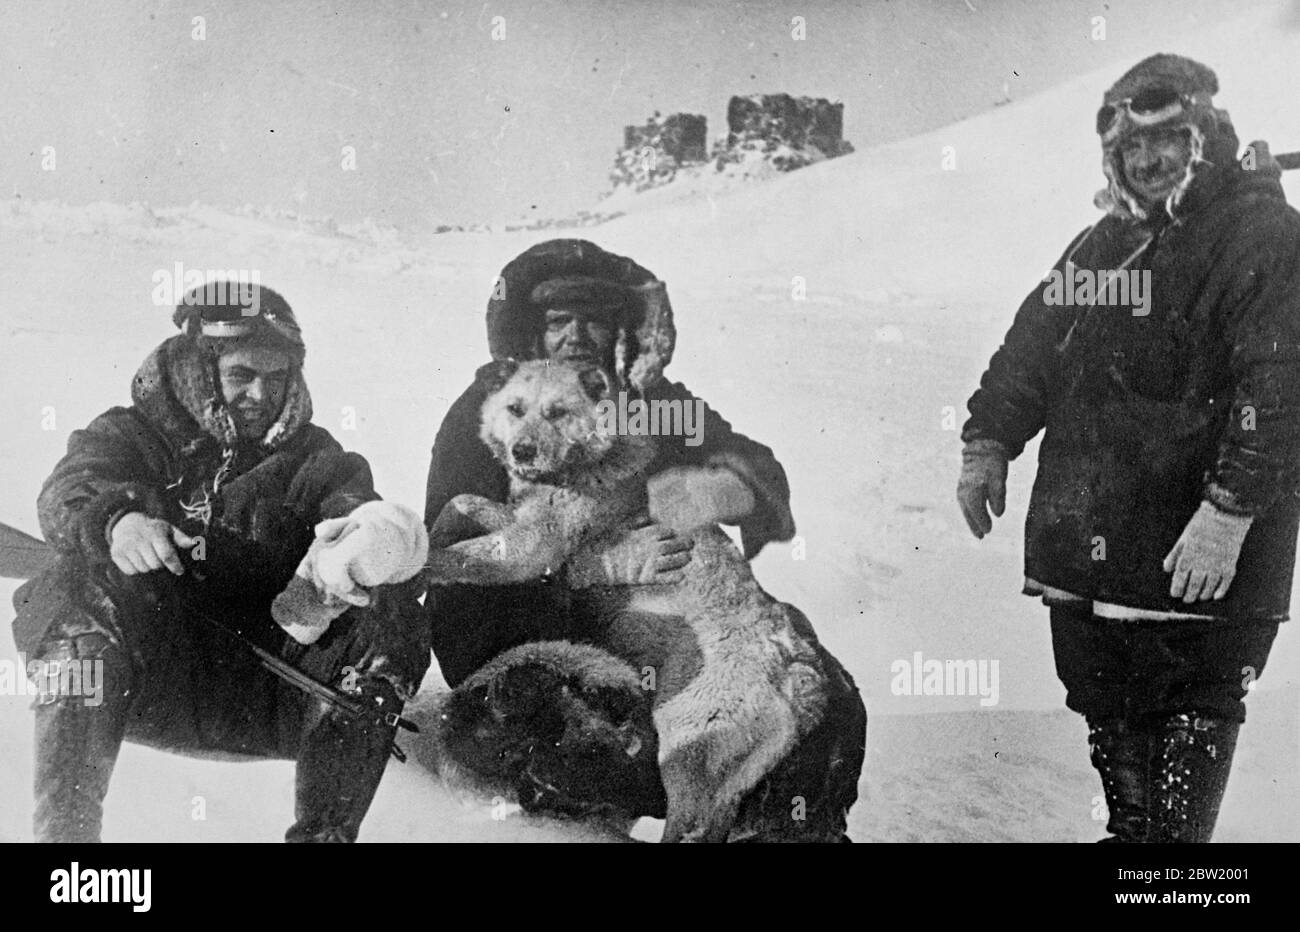 Les membres des pionniers polaires soviétiques se font une expédition avec un de leurs chiens sur la glace. De gauche à droite - P. Shirshov; E. Krenkel et I. Papanin, le capitaine. Les scientifiques russes conquient la terre légendaire de glace et de neige au-dessus du monde qui est encore inexplorée. Ils se sont contenté d'un séjour d'un an sur une banquise au pôle Nord et font maintenant des enquêtes. 2 juillet 1937 Banque D'Images